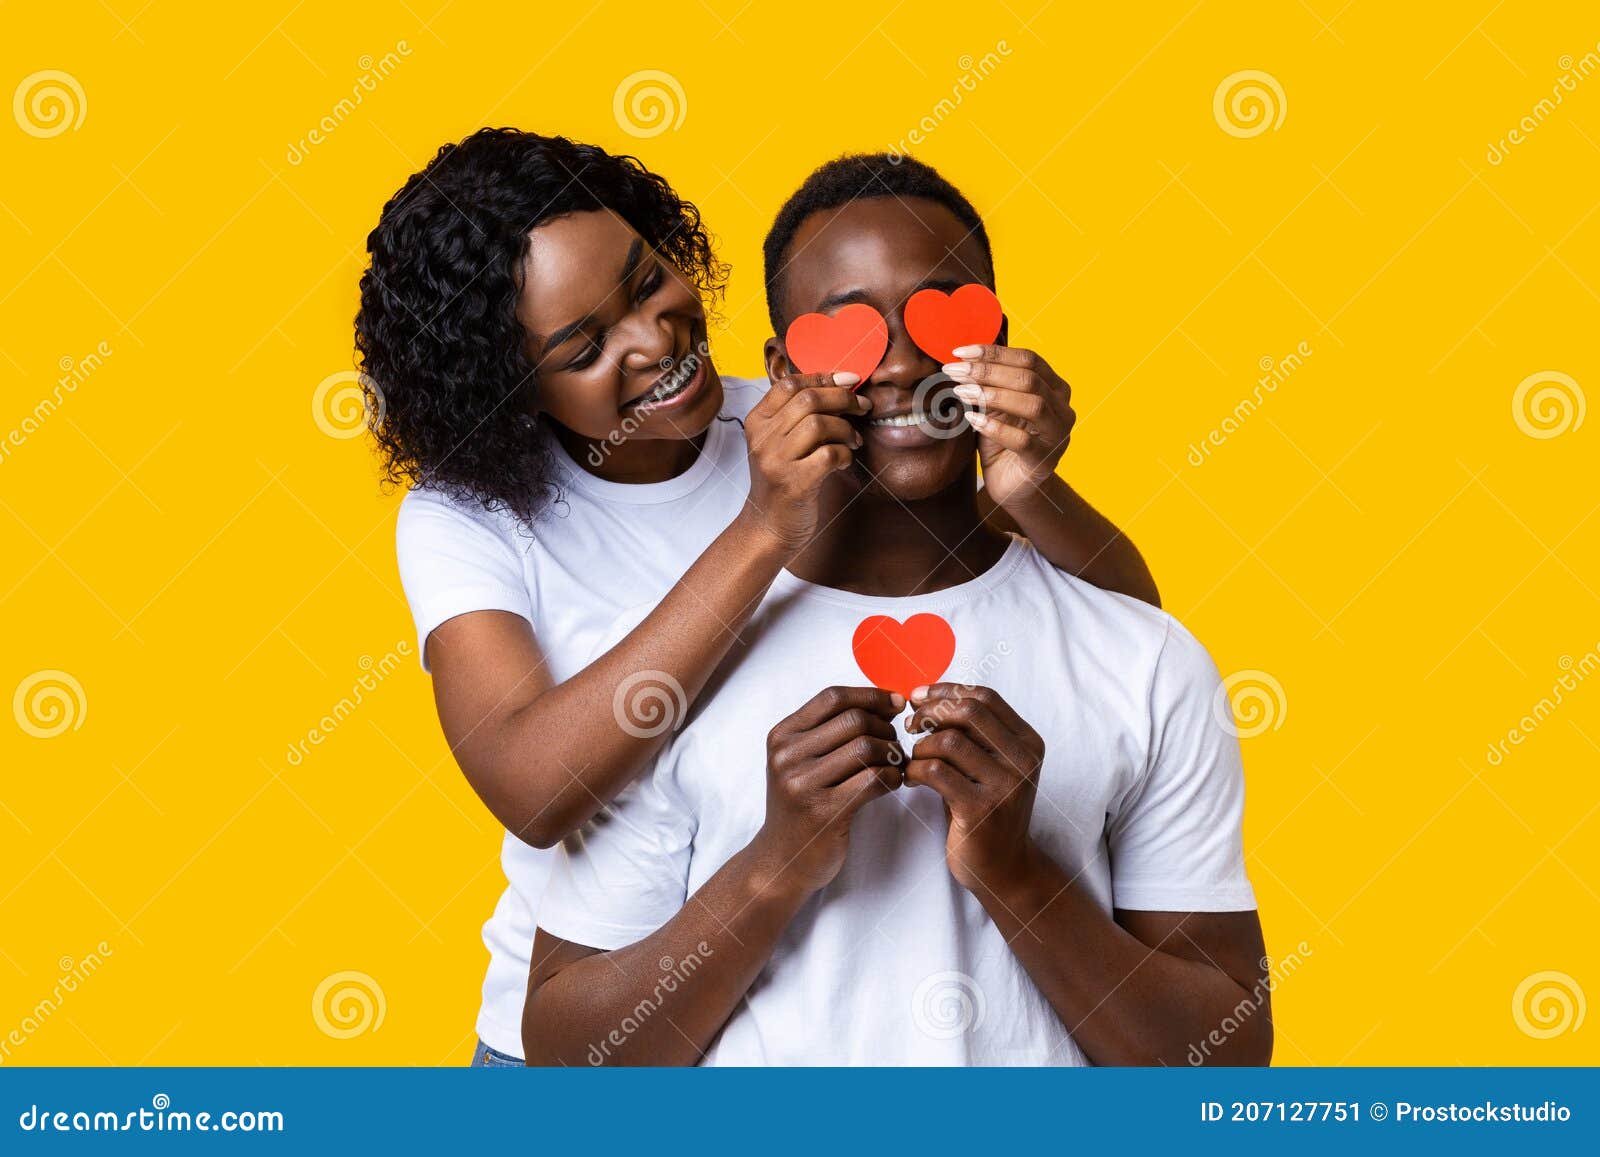 Муж и жена каверы. Девка сидит на деване око неё негры. Afro man hug behind bbc. Люблю чернокожих